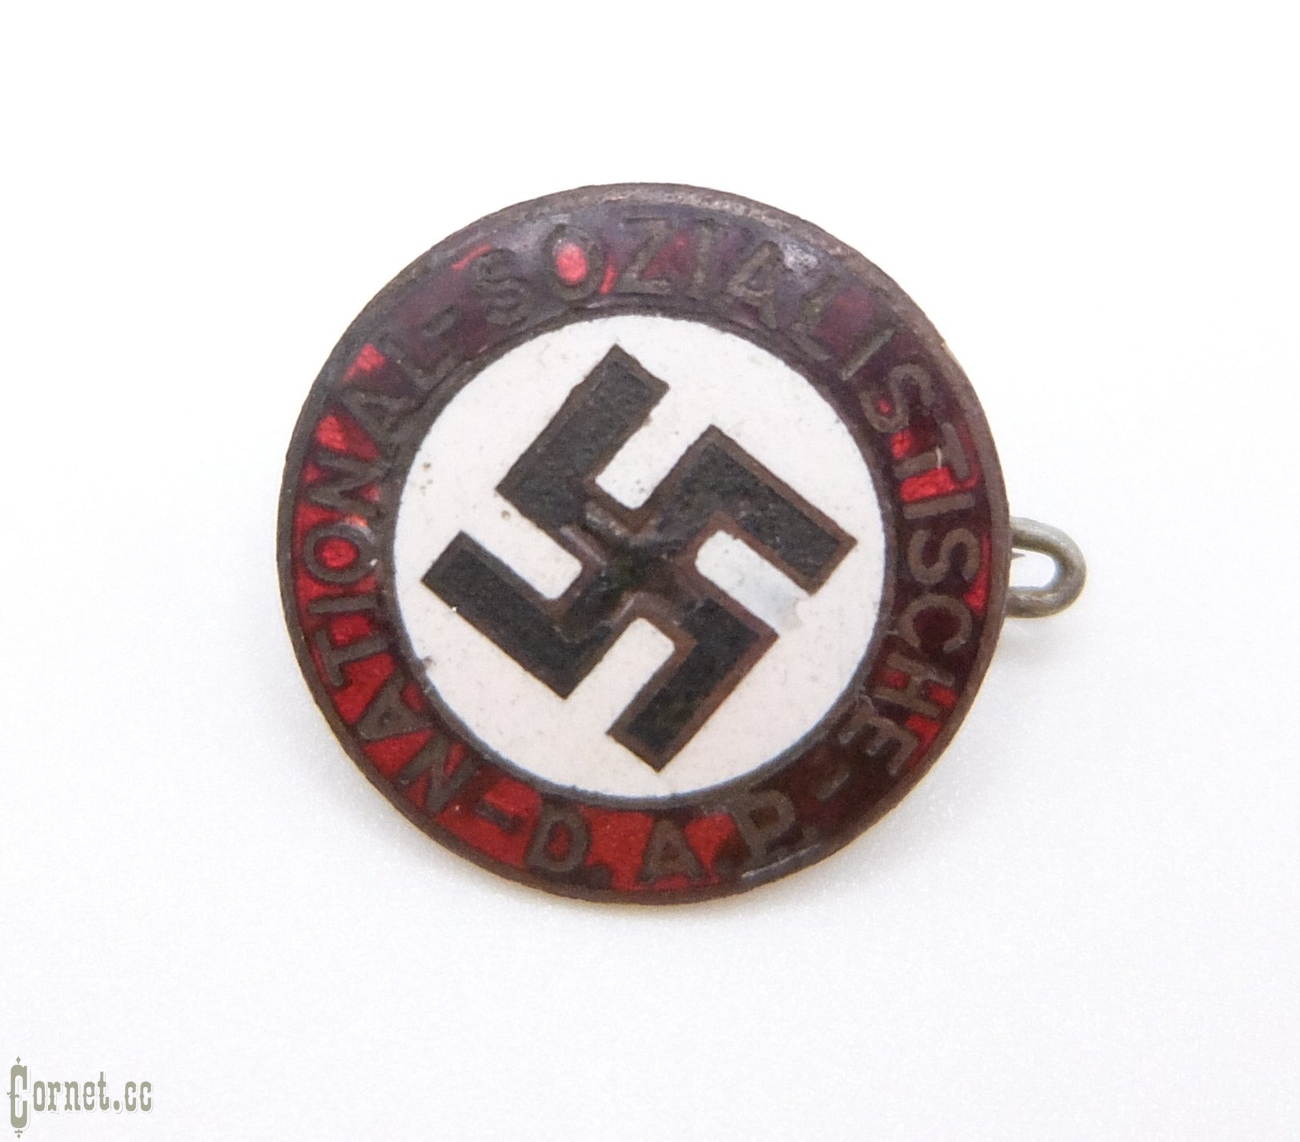 Partey badge NSDAP